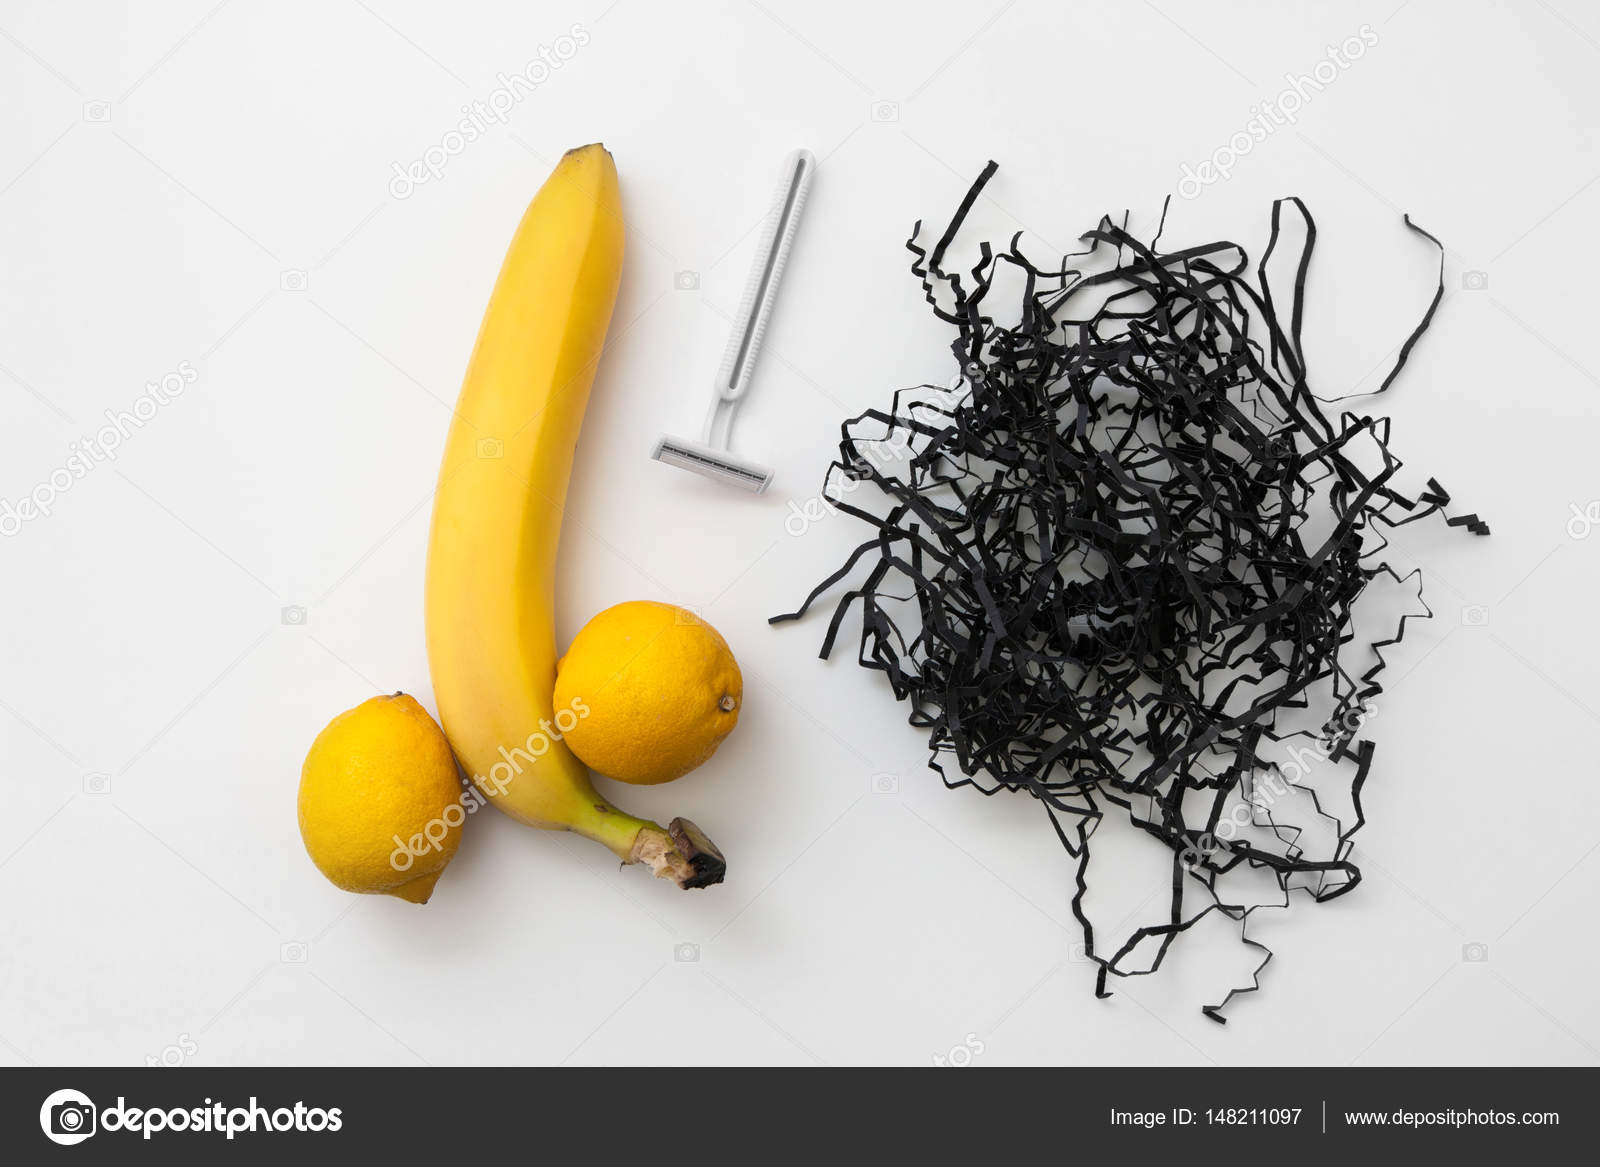 Банан и лимон с бритвой, бритые мужские шарики стоковое фото ©golubovystock  148211097